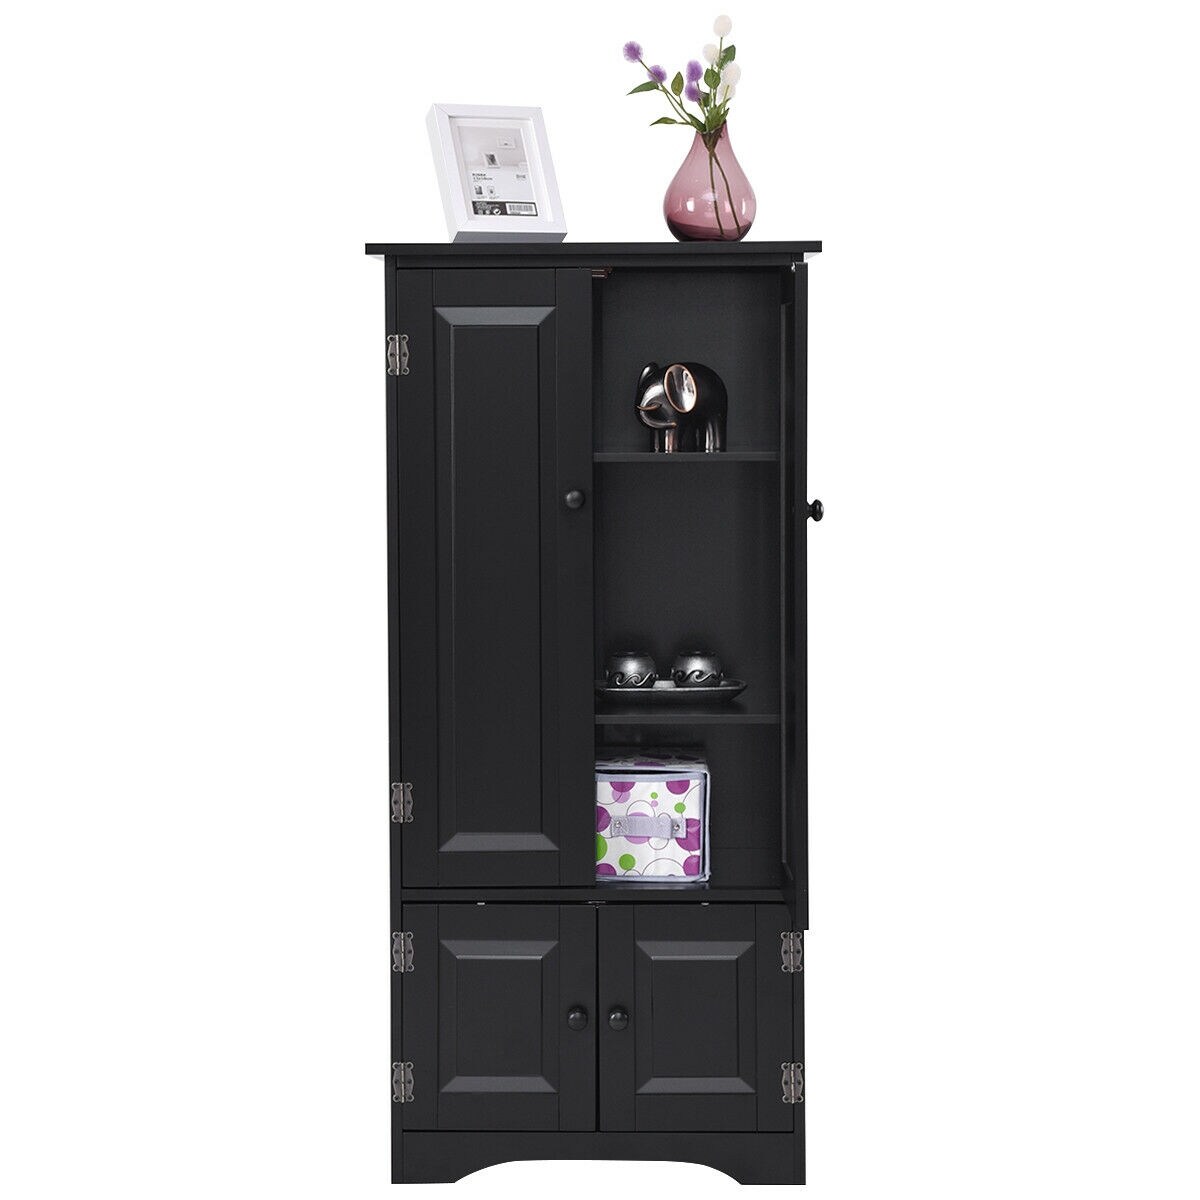 Costway Accent Storage Cabinet Adjustable Shelves Antique 2 Door Floor - See Details